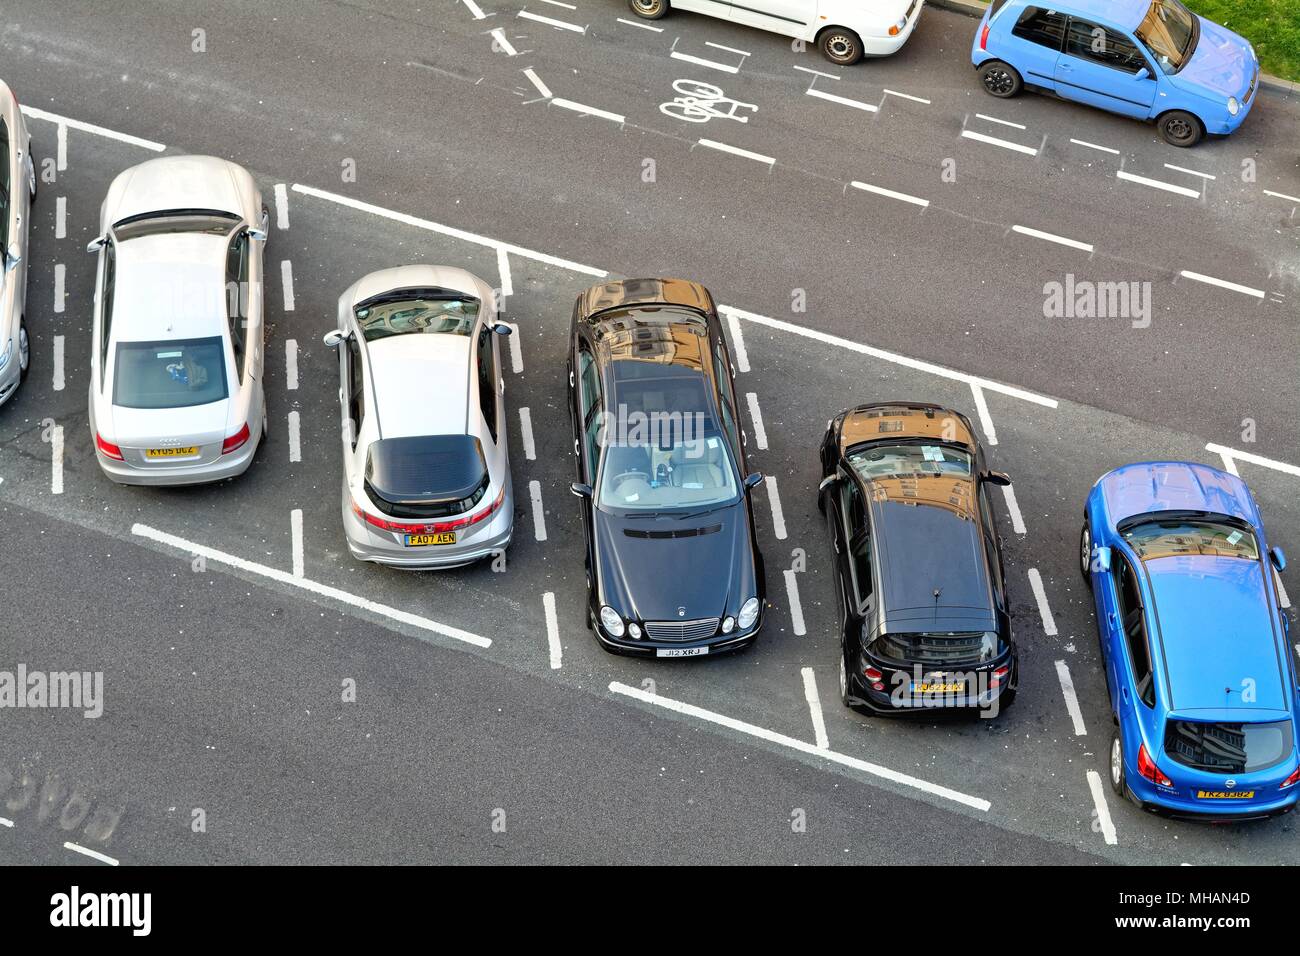 Vue aérienne de voitures en stationnement en parking baies Devonshire Place Eastbourne East Sussex England UK Banque D'Images